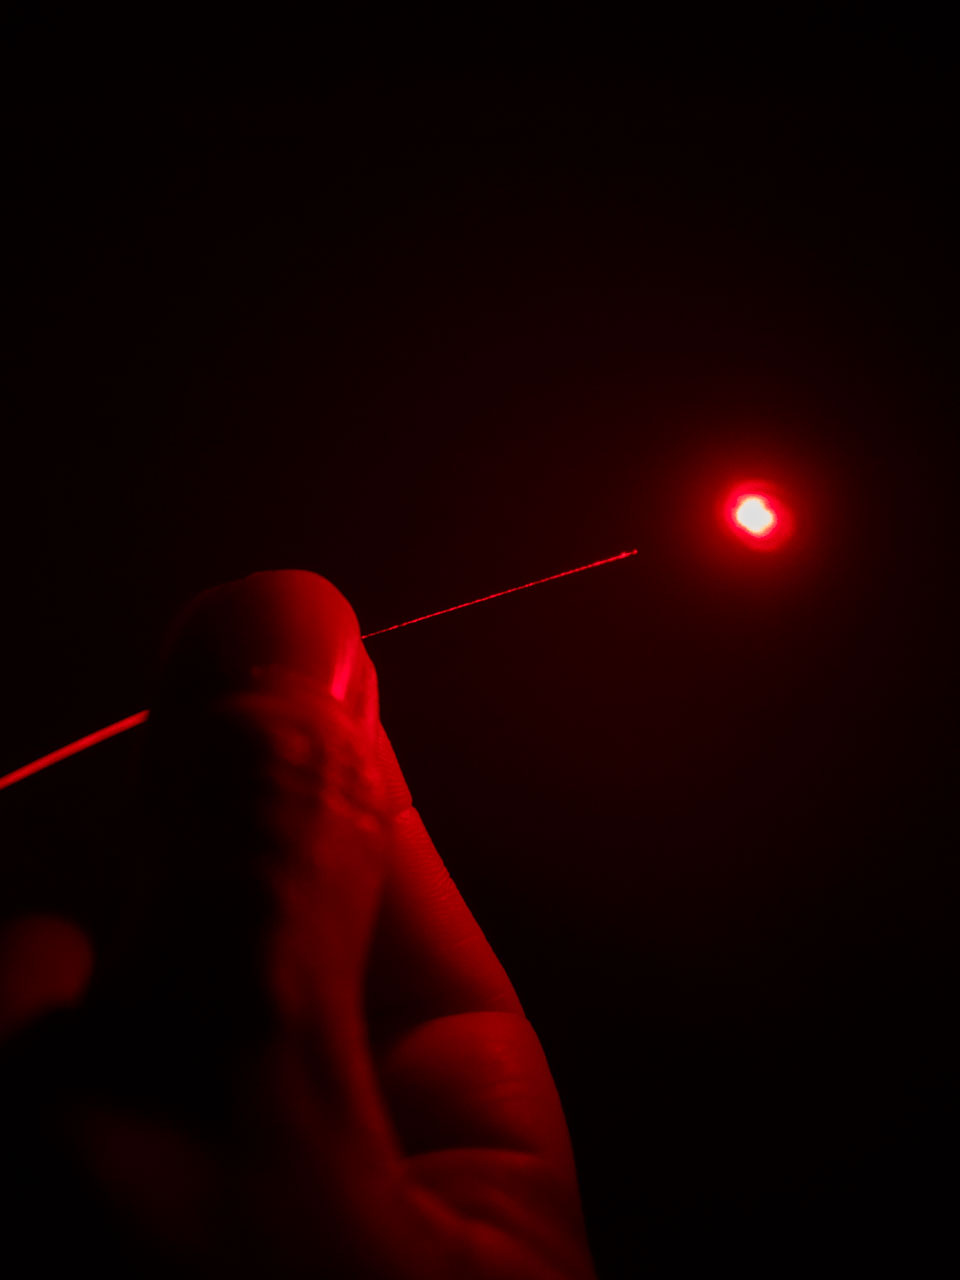 Una persona sostiene un cable de fibra óptica iluminado en color rojo